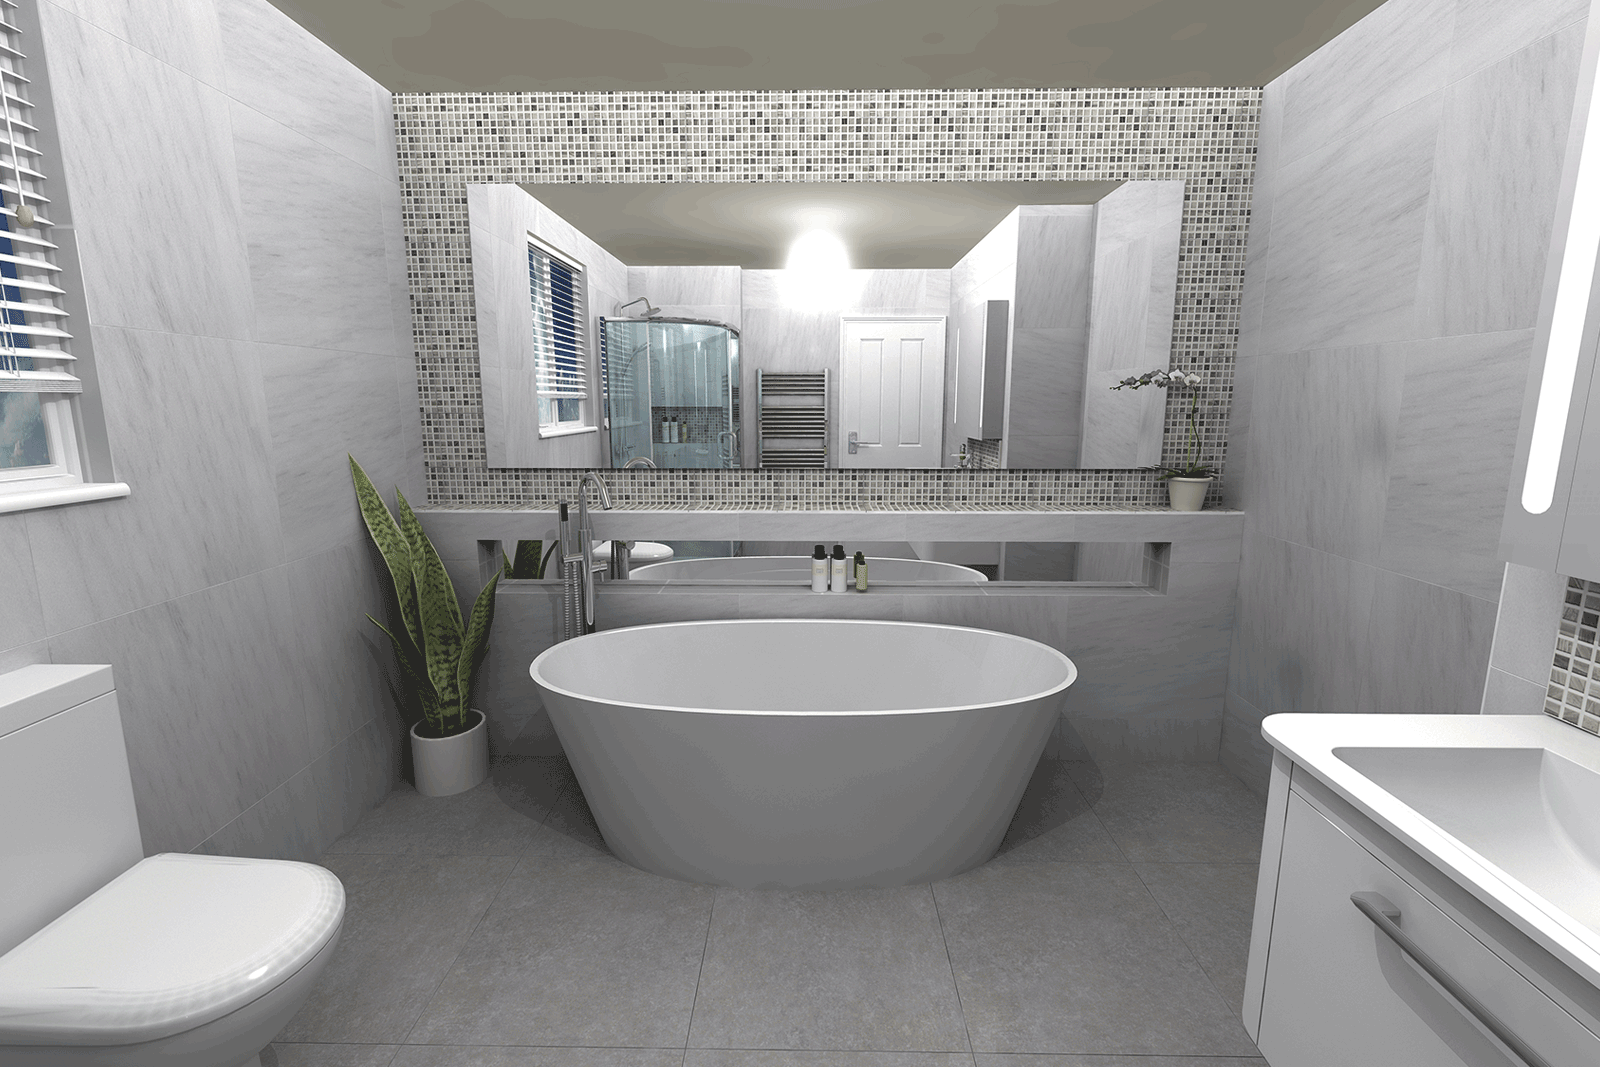 Bauhaus celeste bathroom